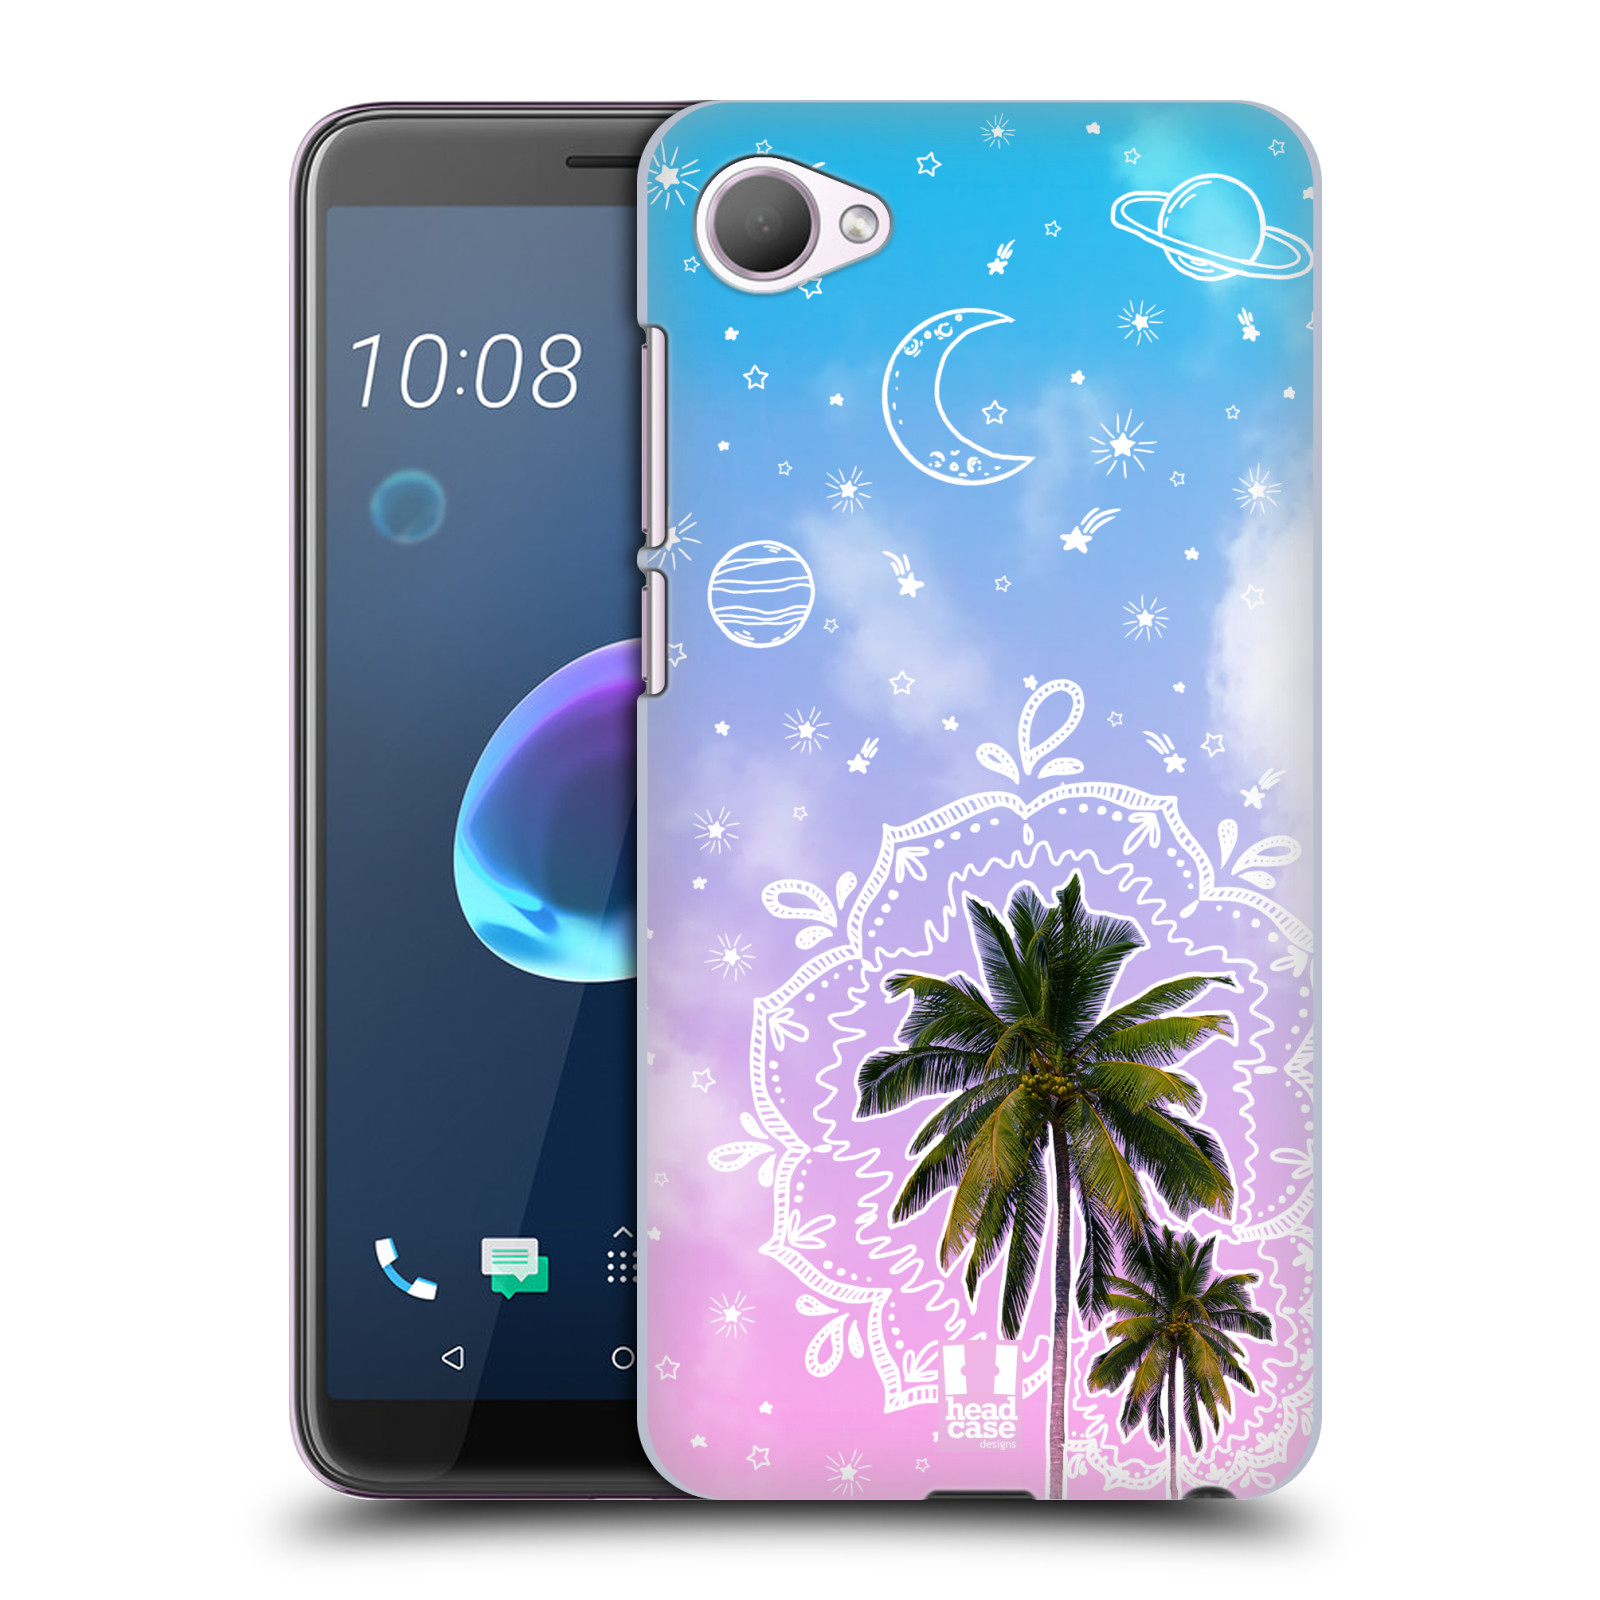 Pouzdro na mobil HTC Desire 12 / Desire 12 DUAL SIM - HEAD CASE - Mandala a palmy